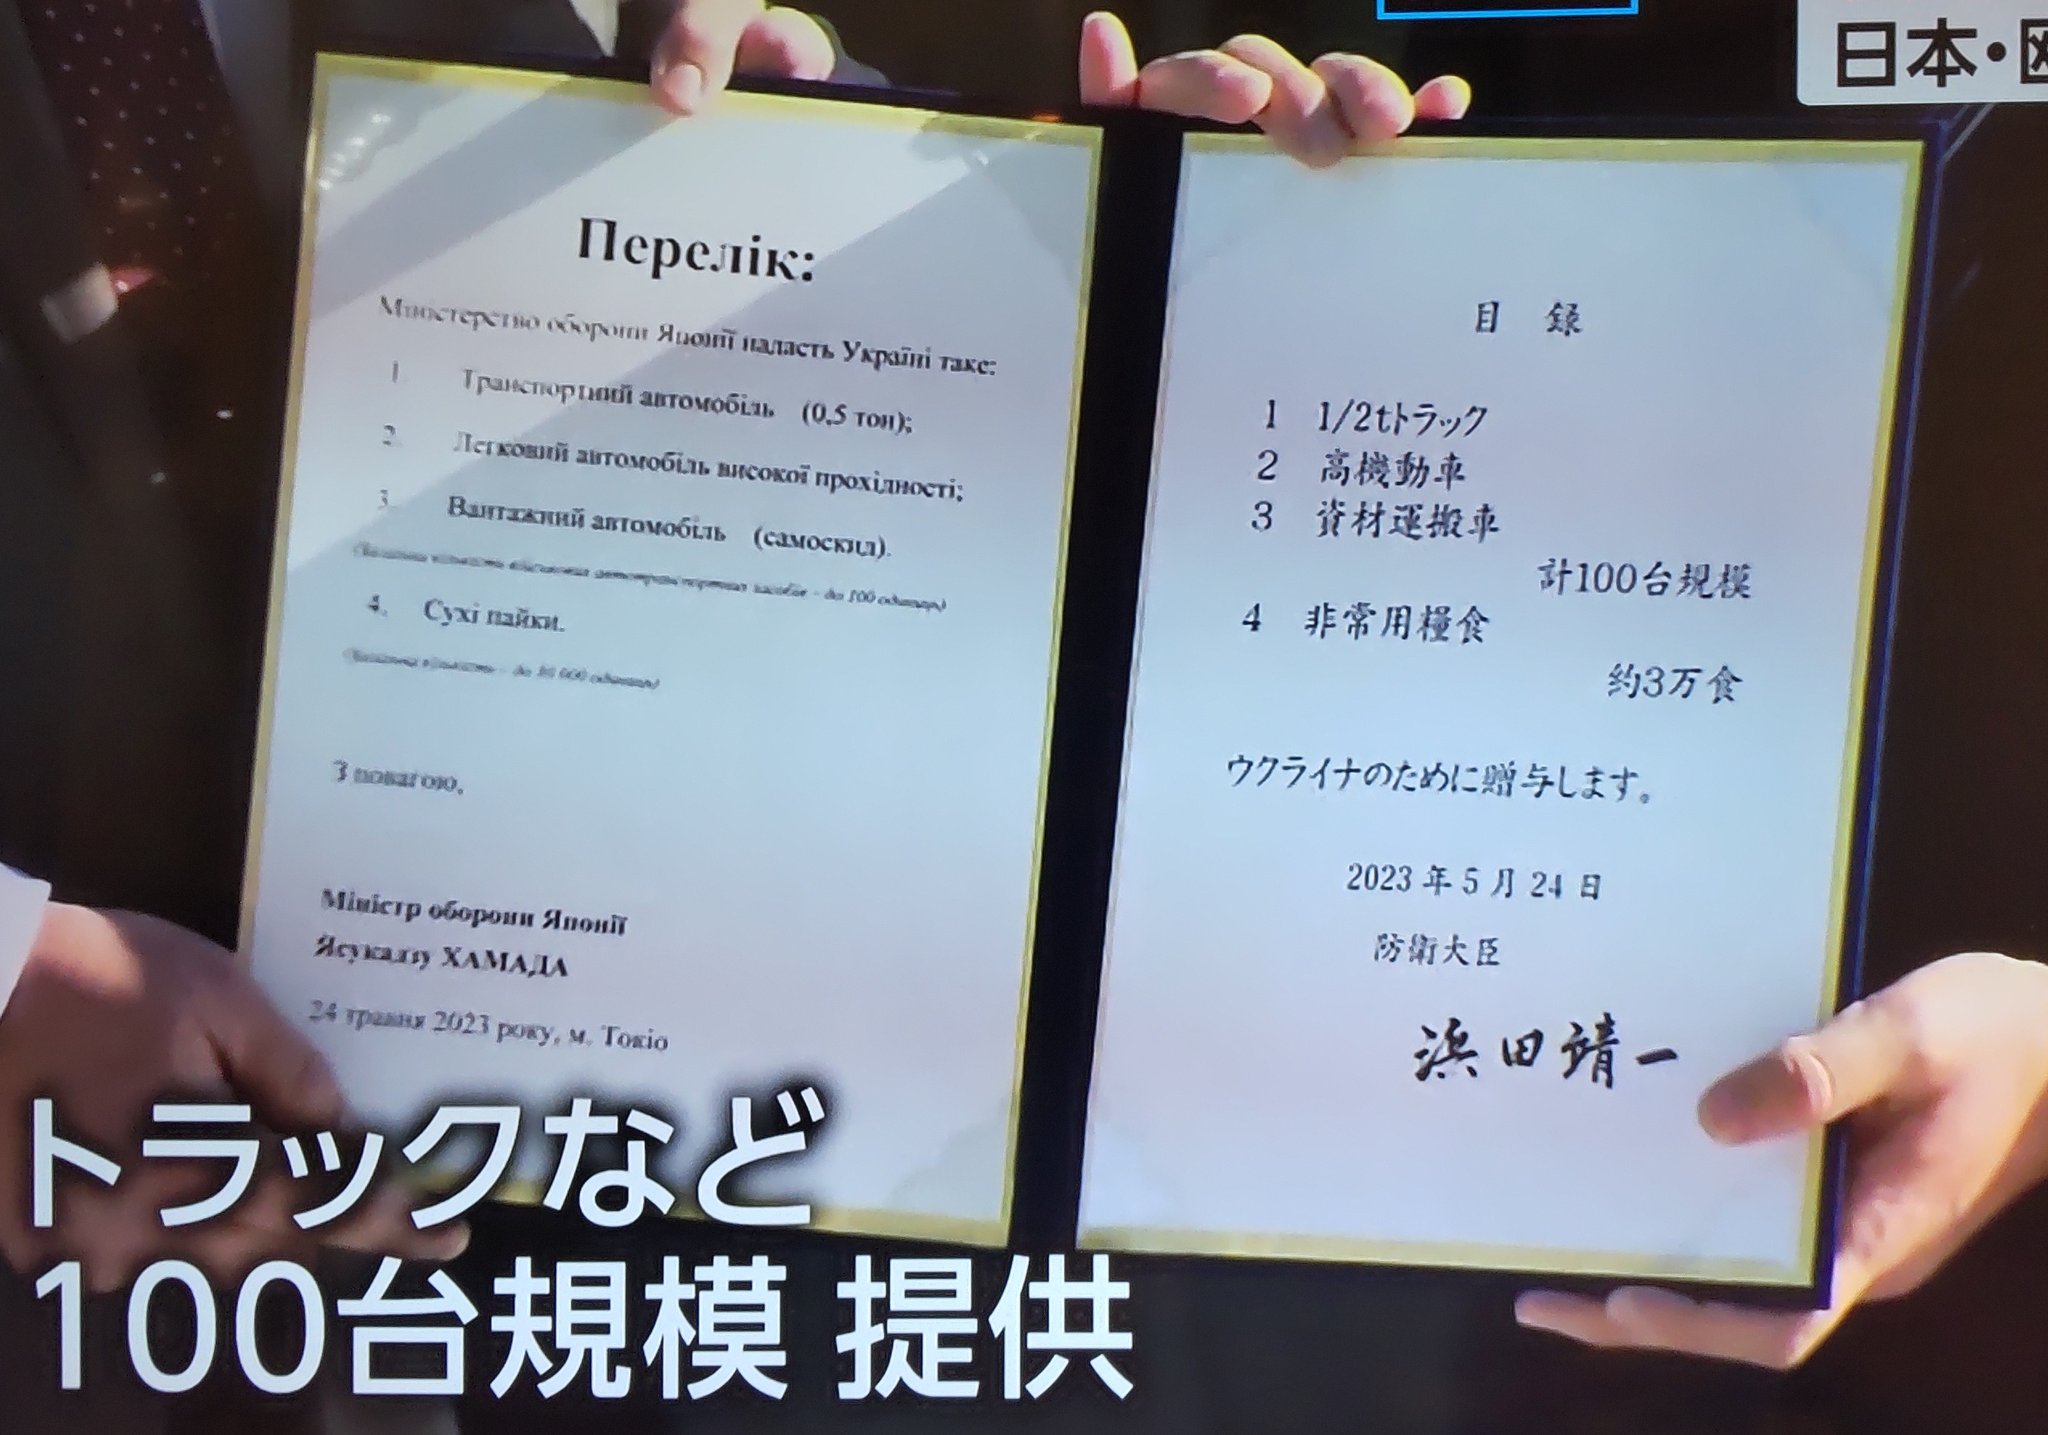 Документ о передаче Украине военной помощи от Японии (Фото – Sergiy Korsunsky)